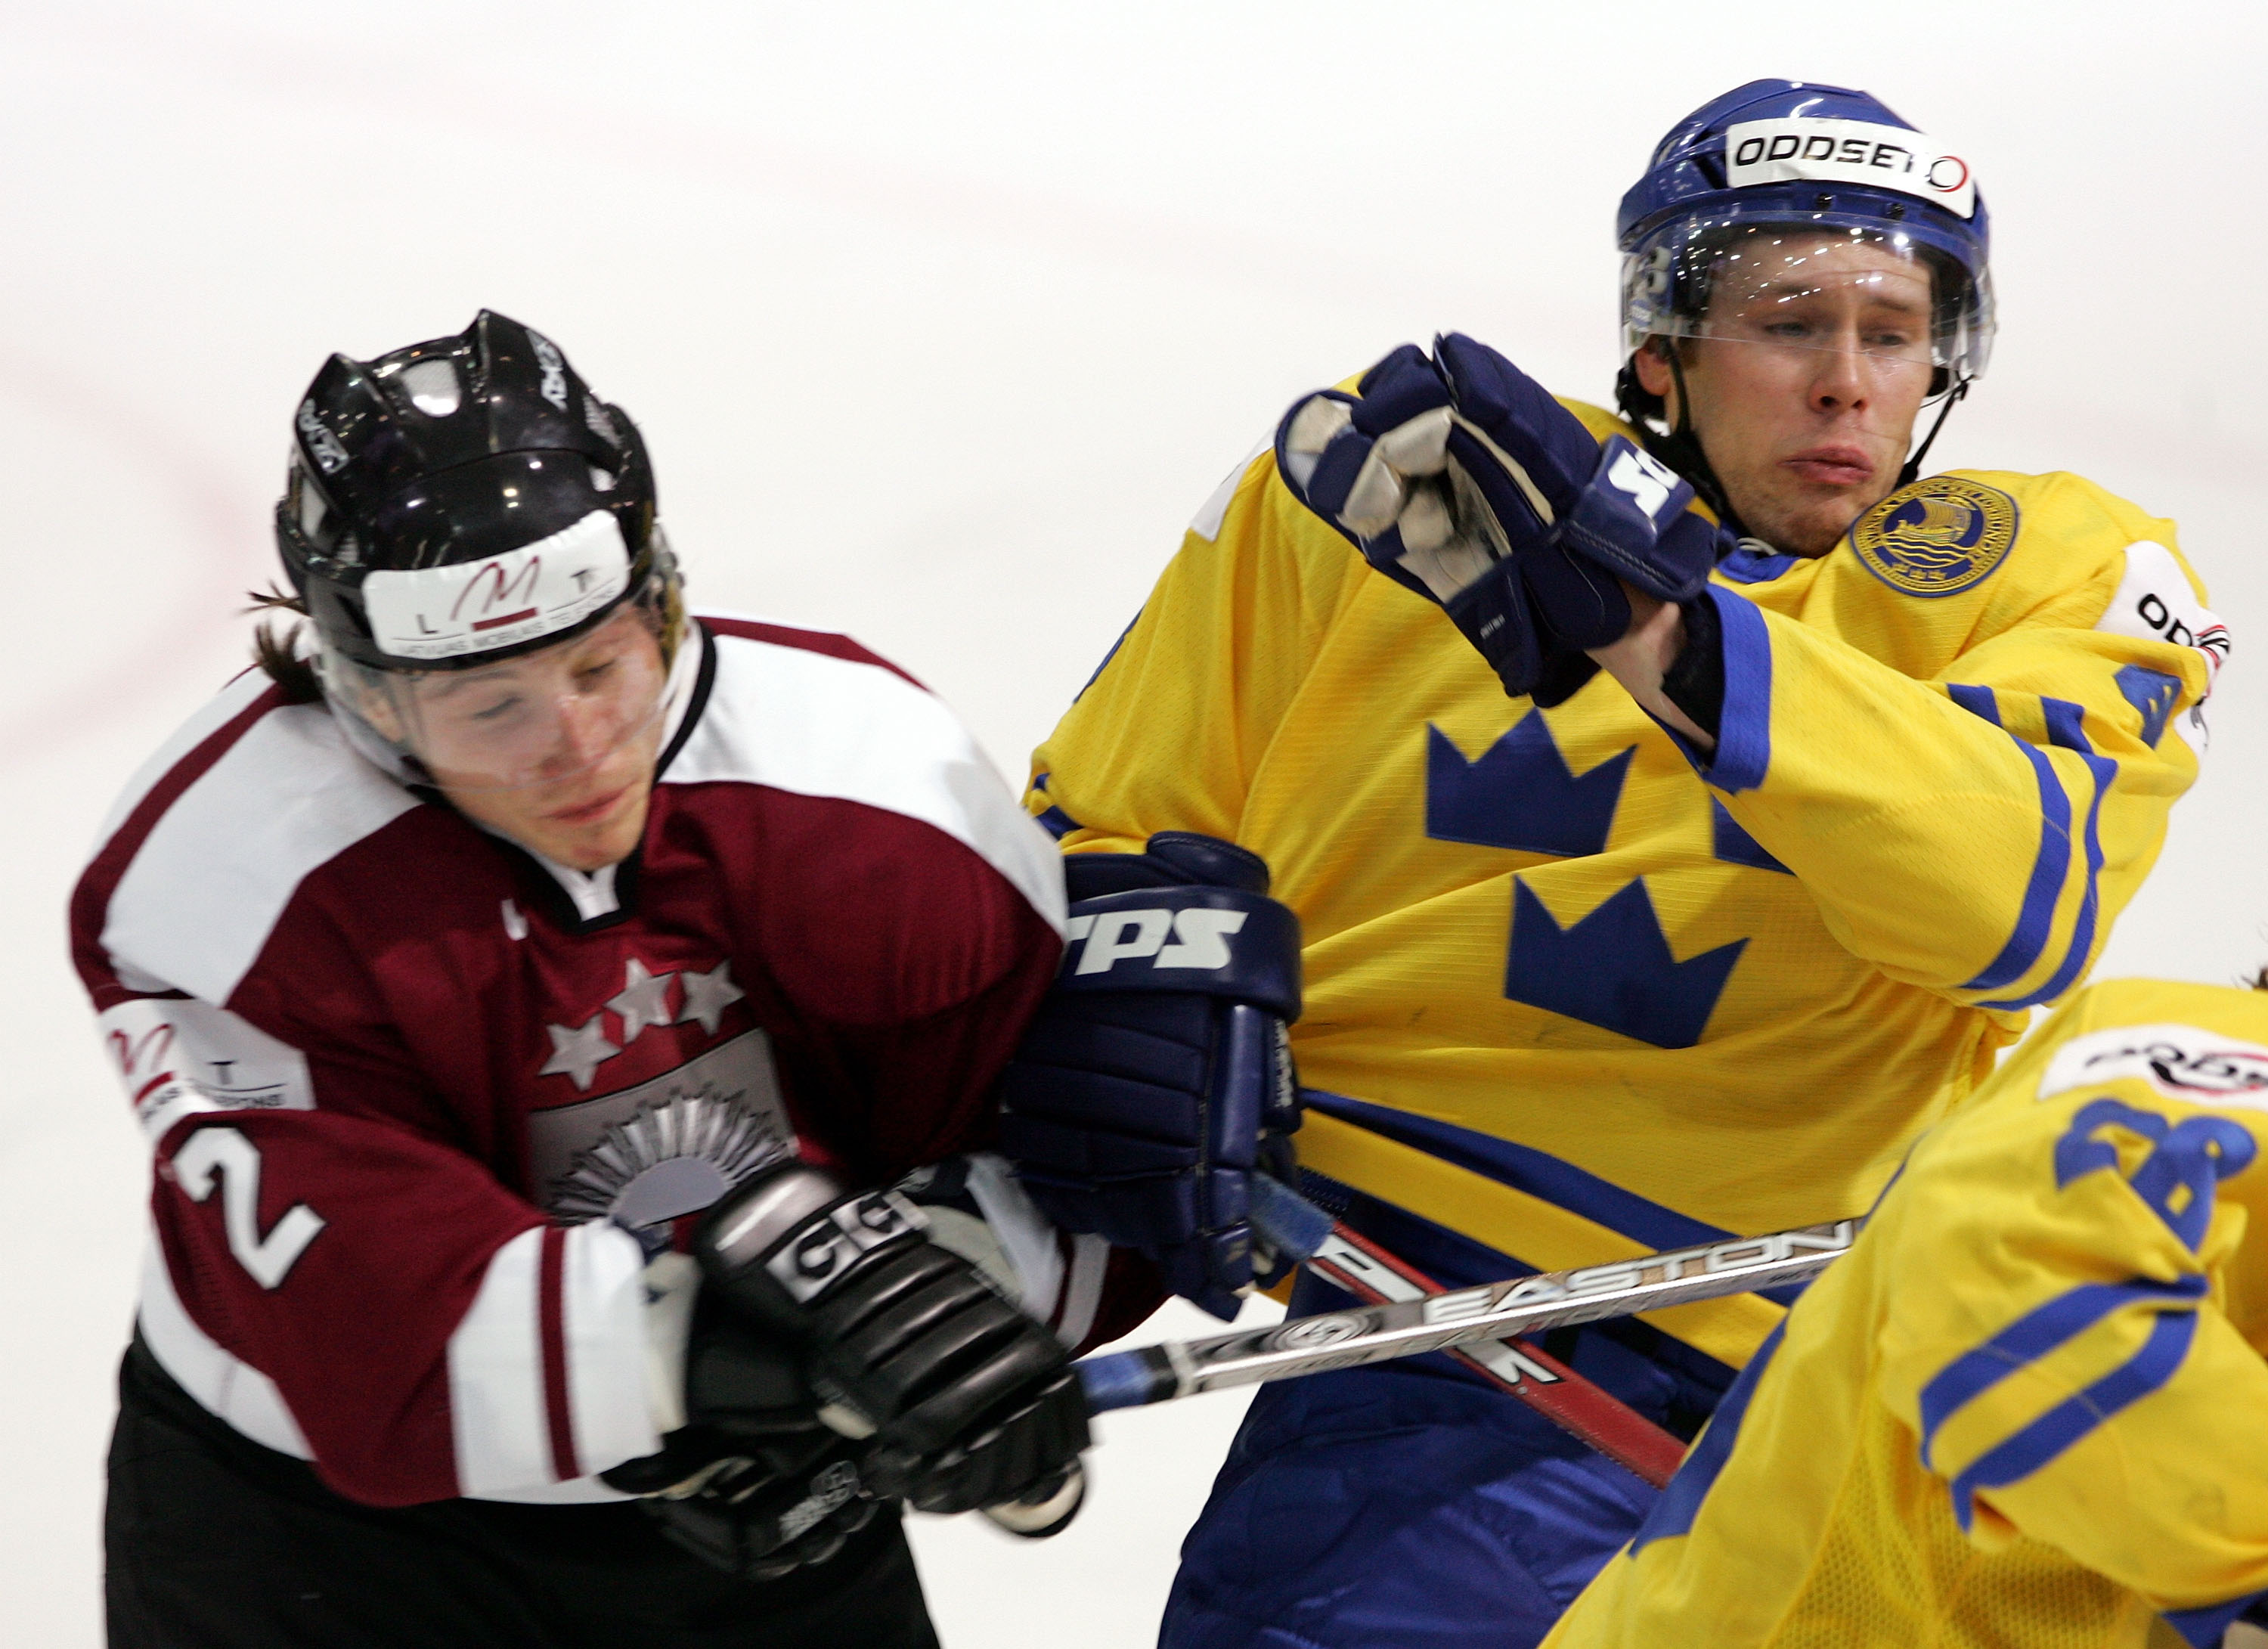 Lettiske backen Rodrigo Lavins, 37 var med och mötte Tre Kronor i VM 2005.